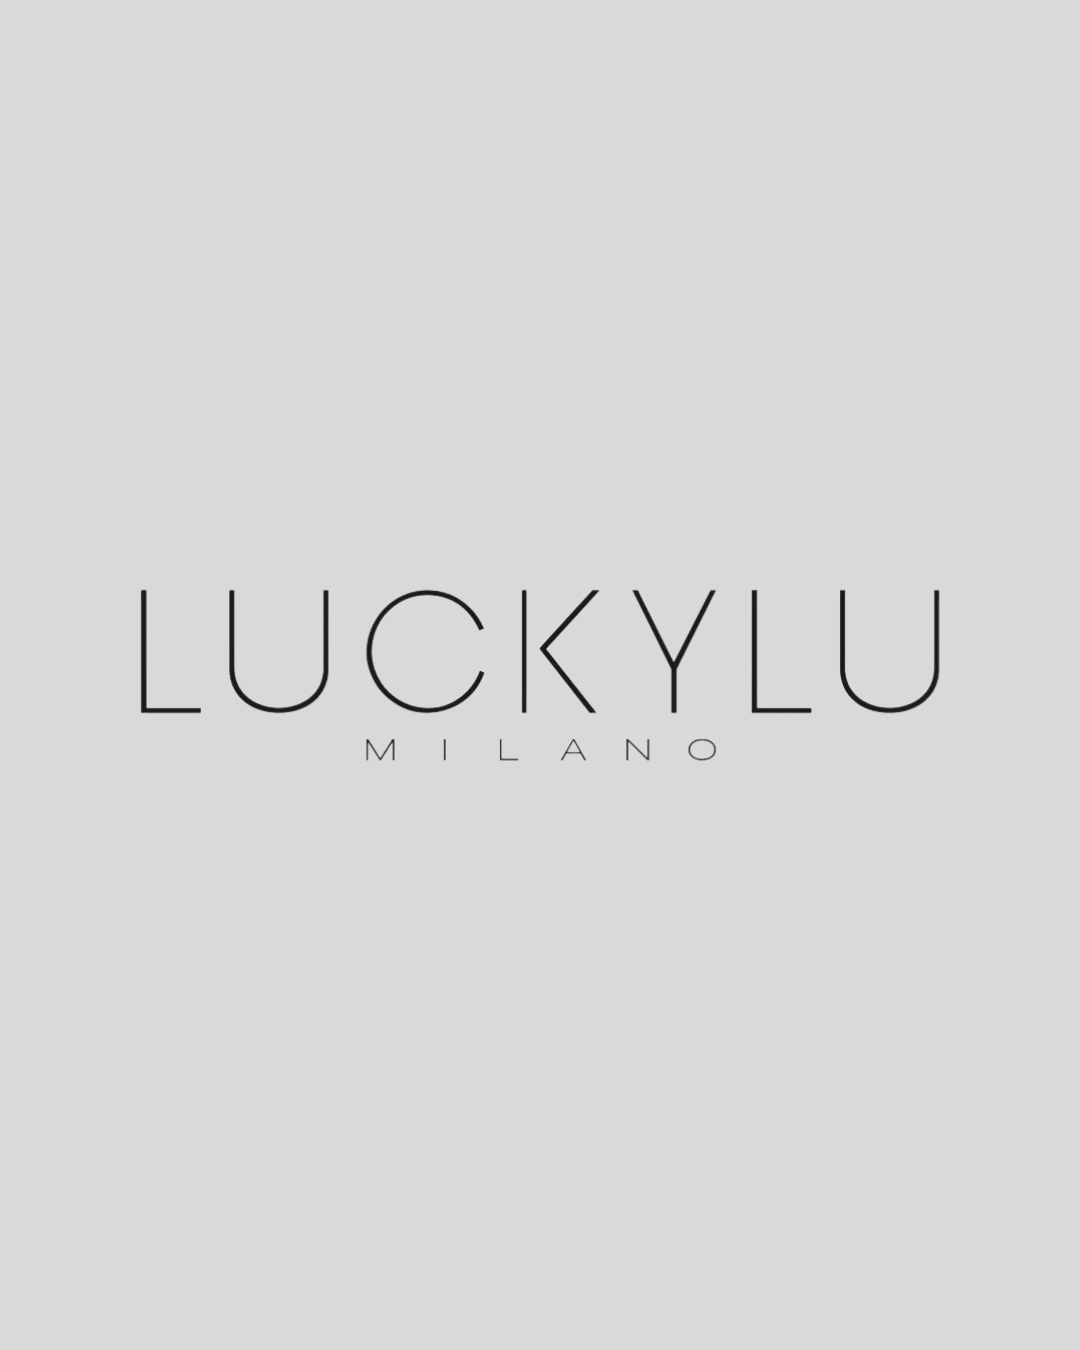 Luckylu